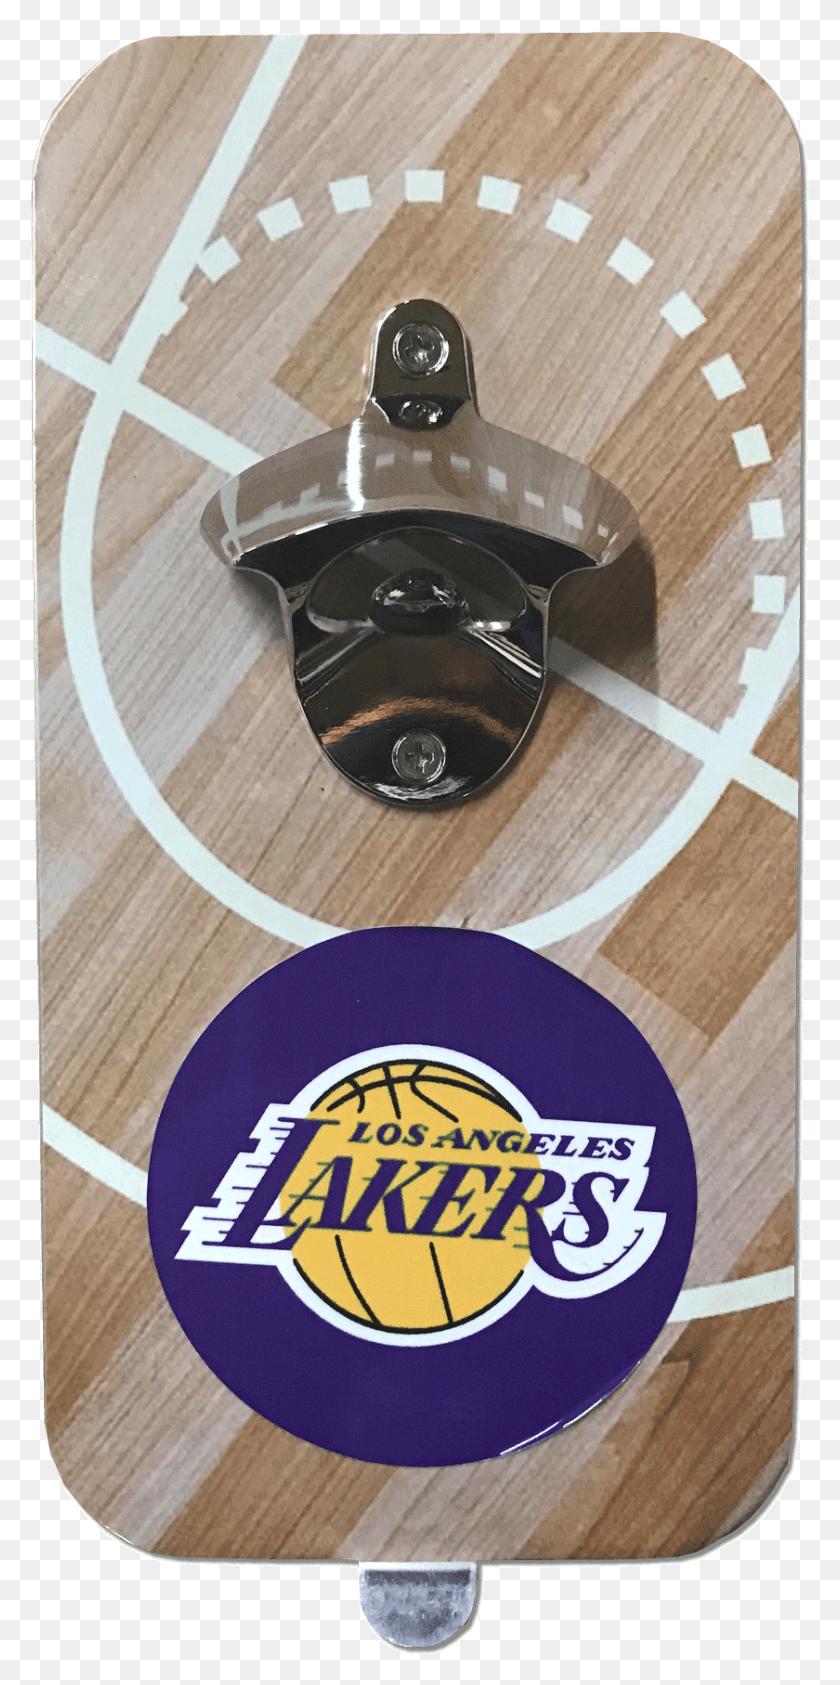 840x1750 Picture Of Nba Los Angeles Lakers Juego De Abridores, Logotipos Y Uniformes De Los Lakers De Los Angeles, Etiqueta, Texto, Decoración Del Hogar Hd Png Descargar